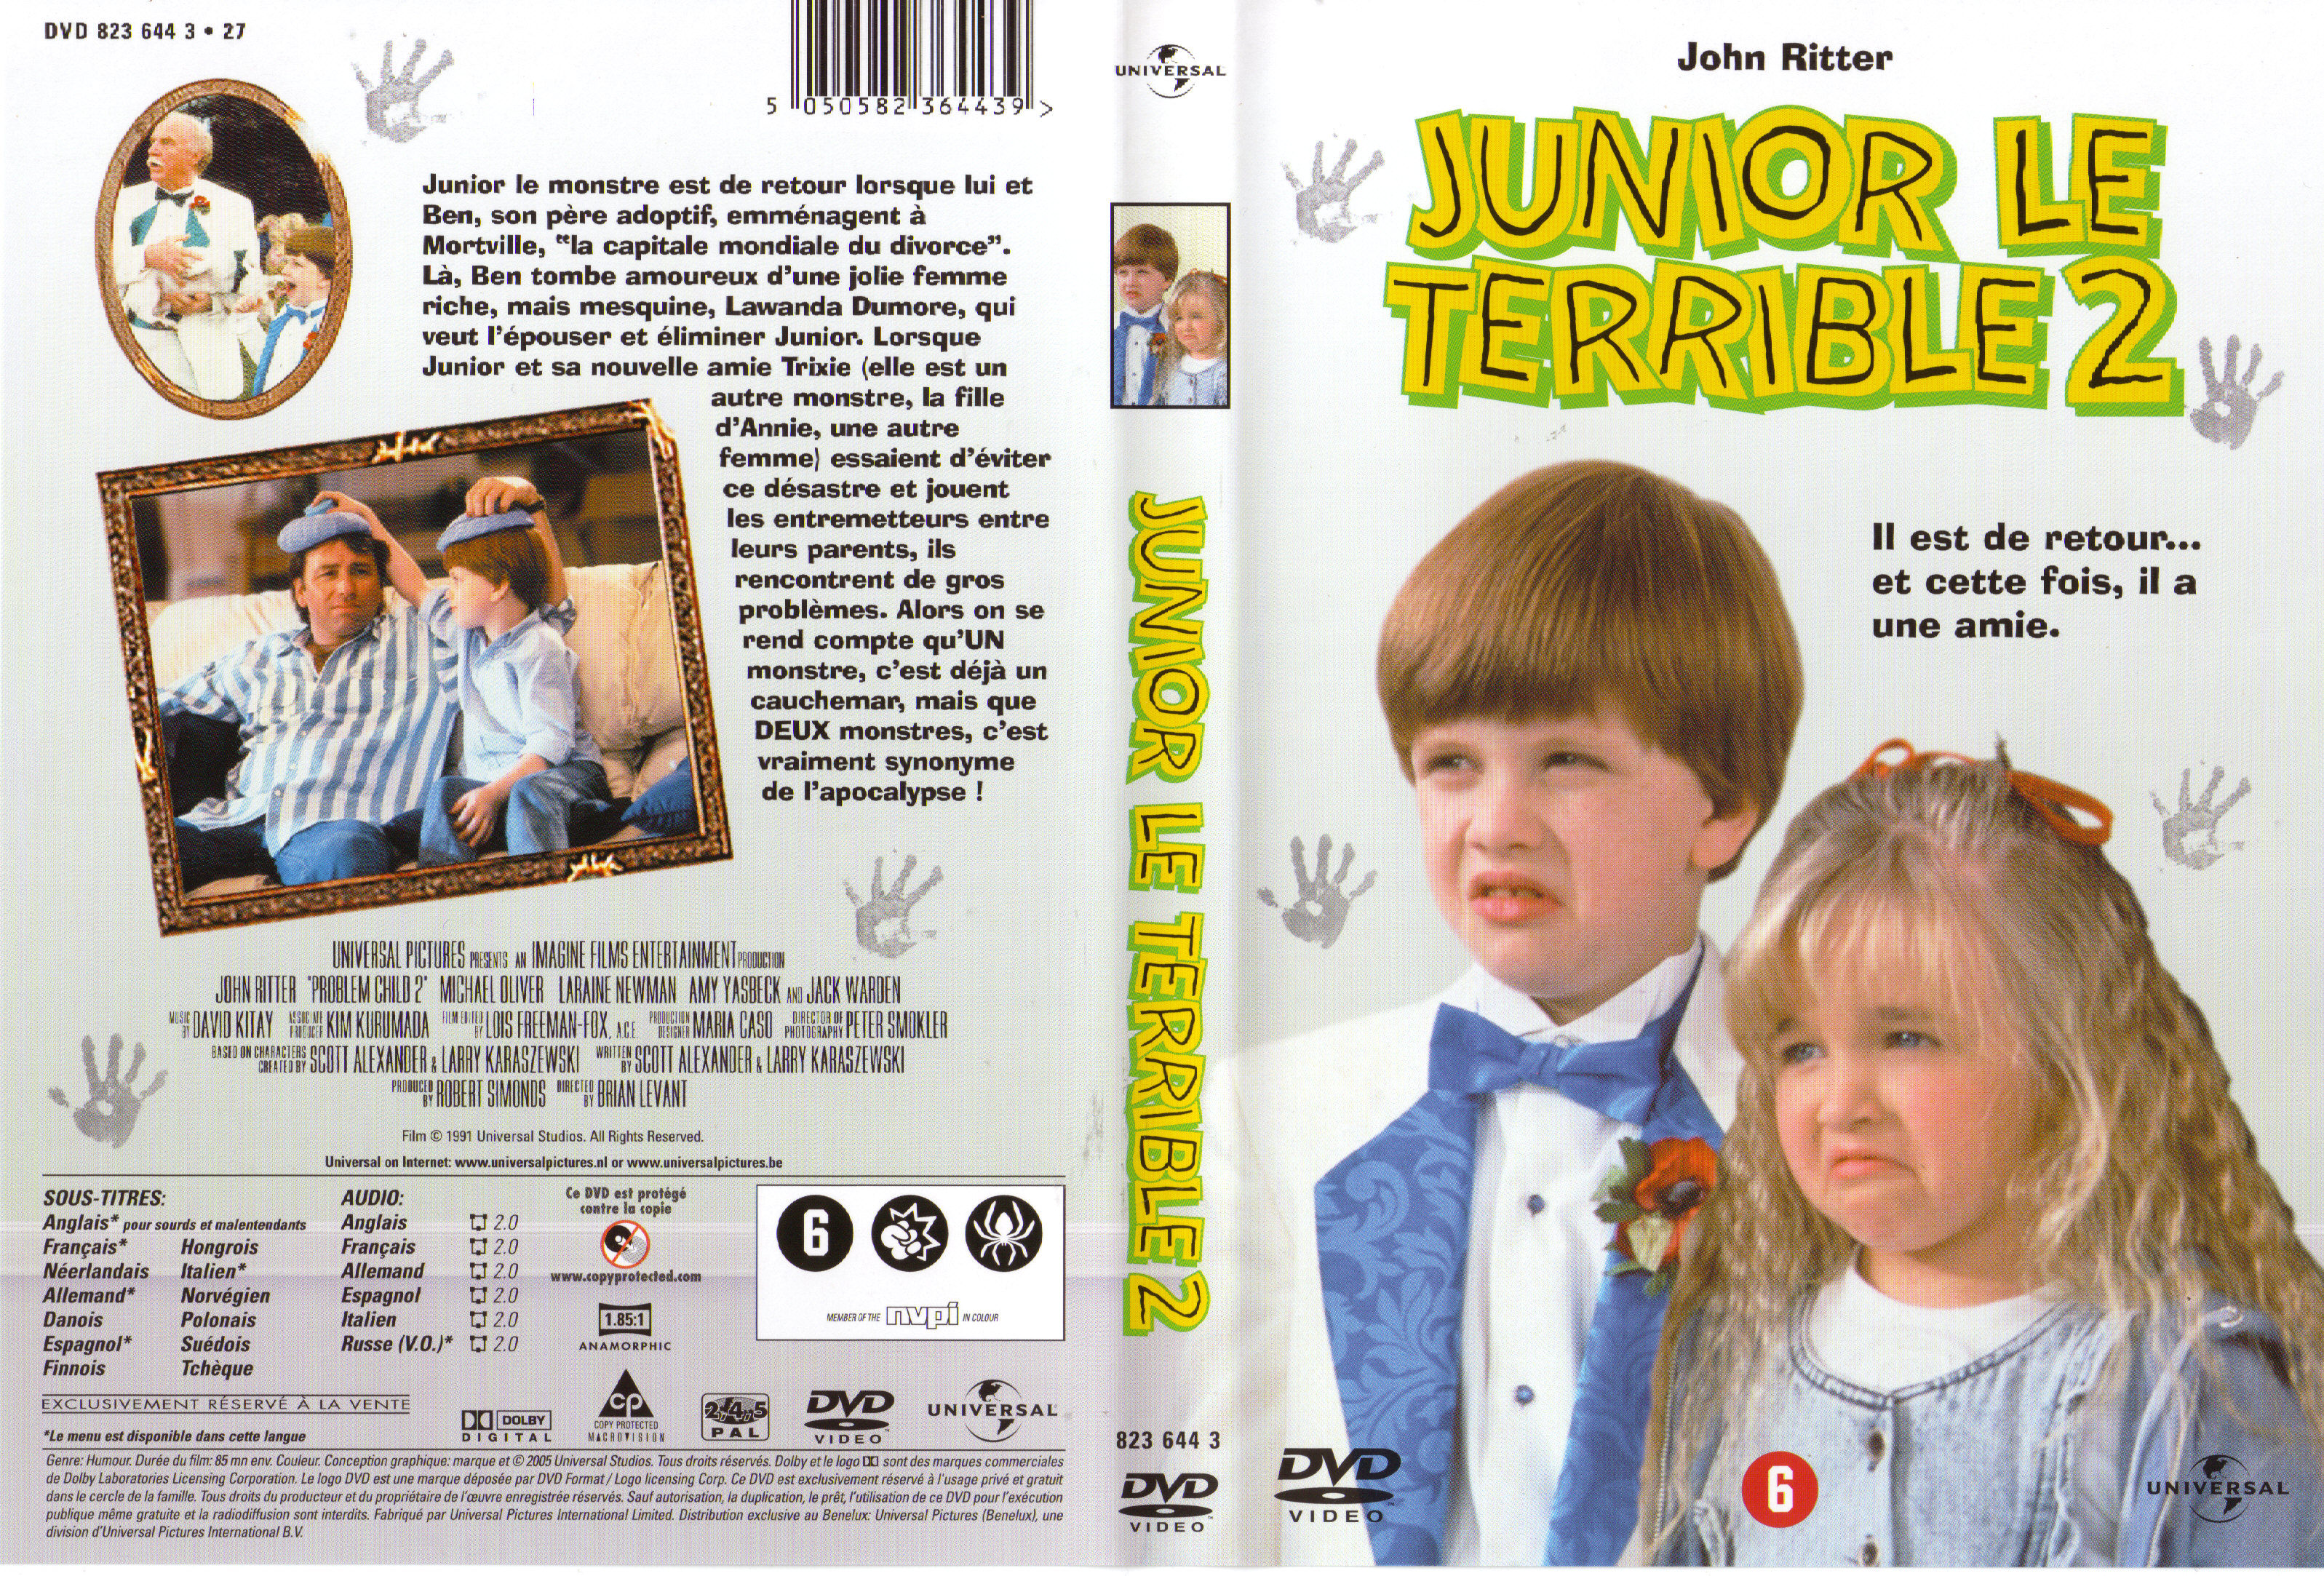 Jaquette DVD Junior le terrible 2